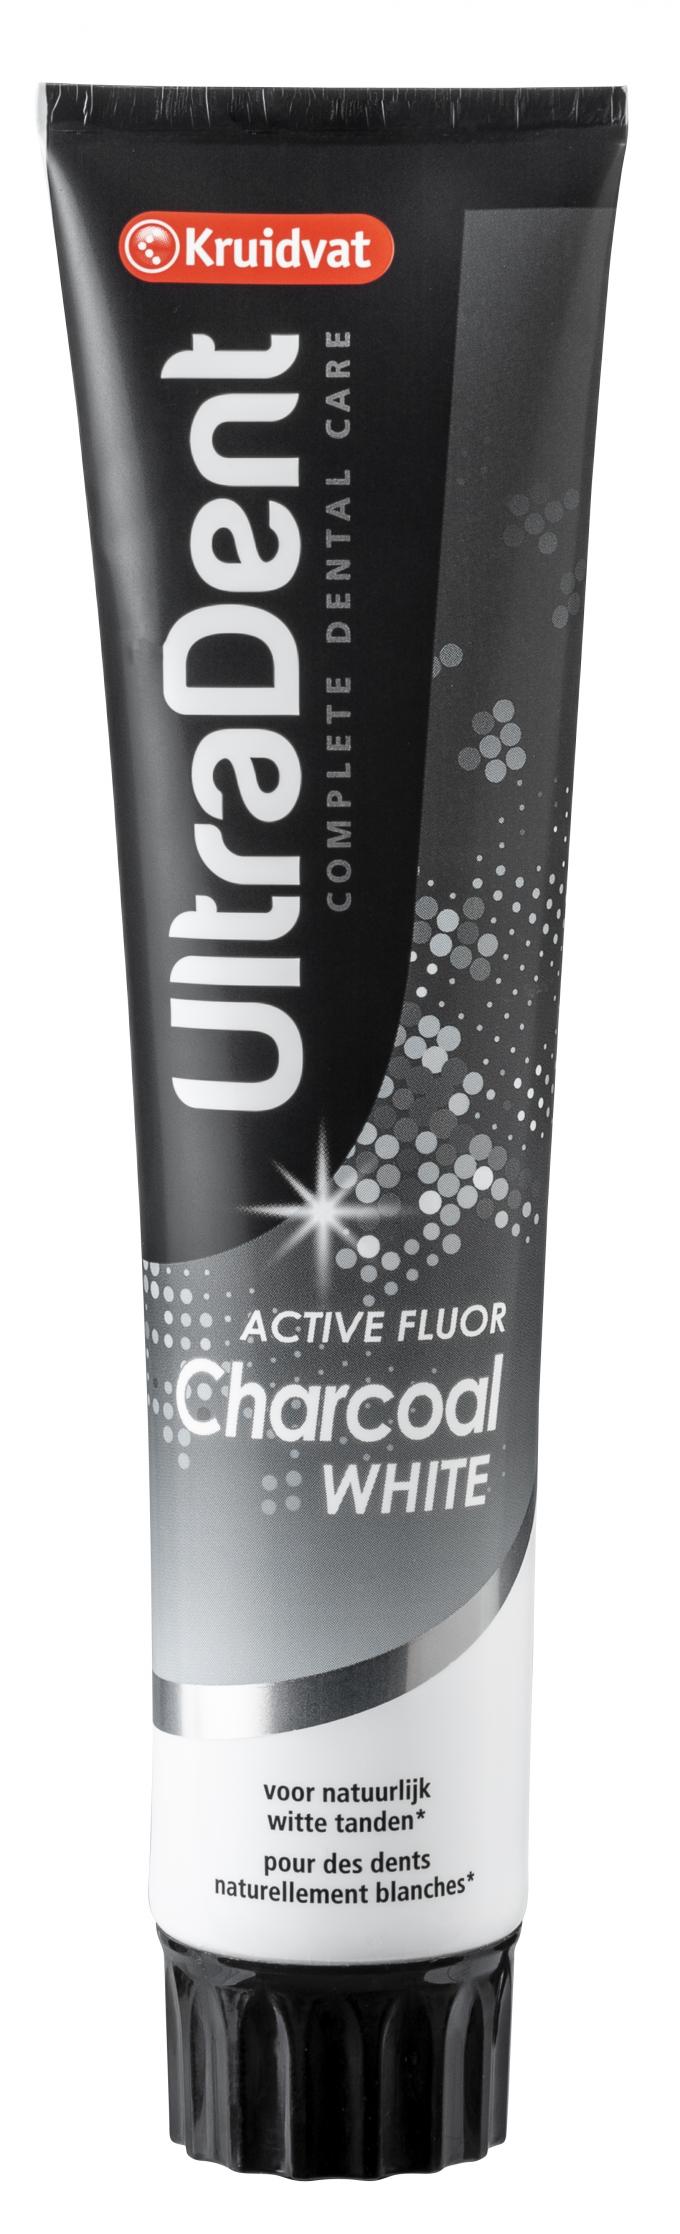 Ultradent Charcoal tandpasta met fluoride